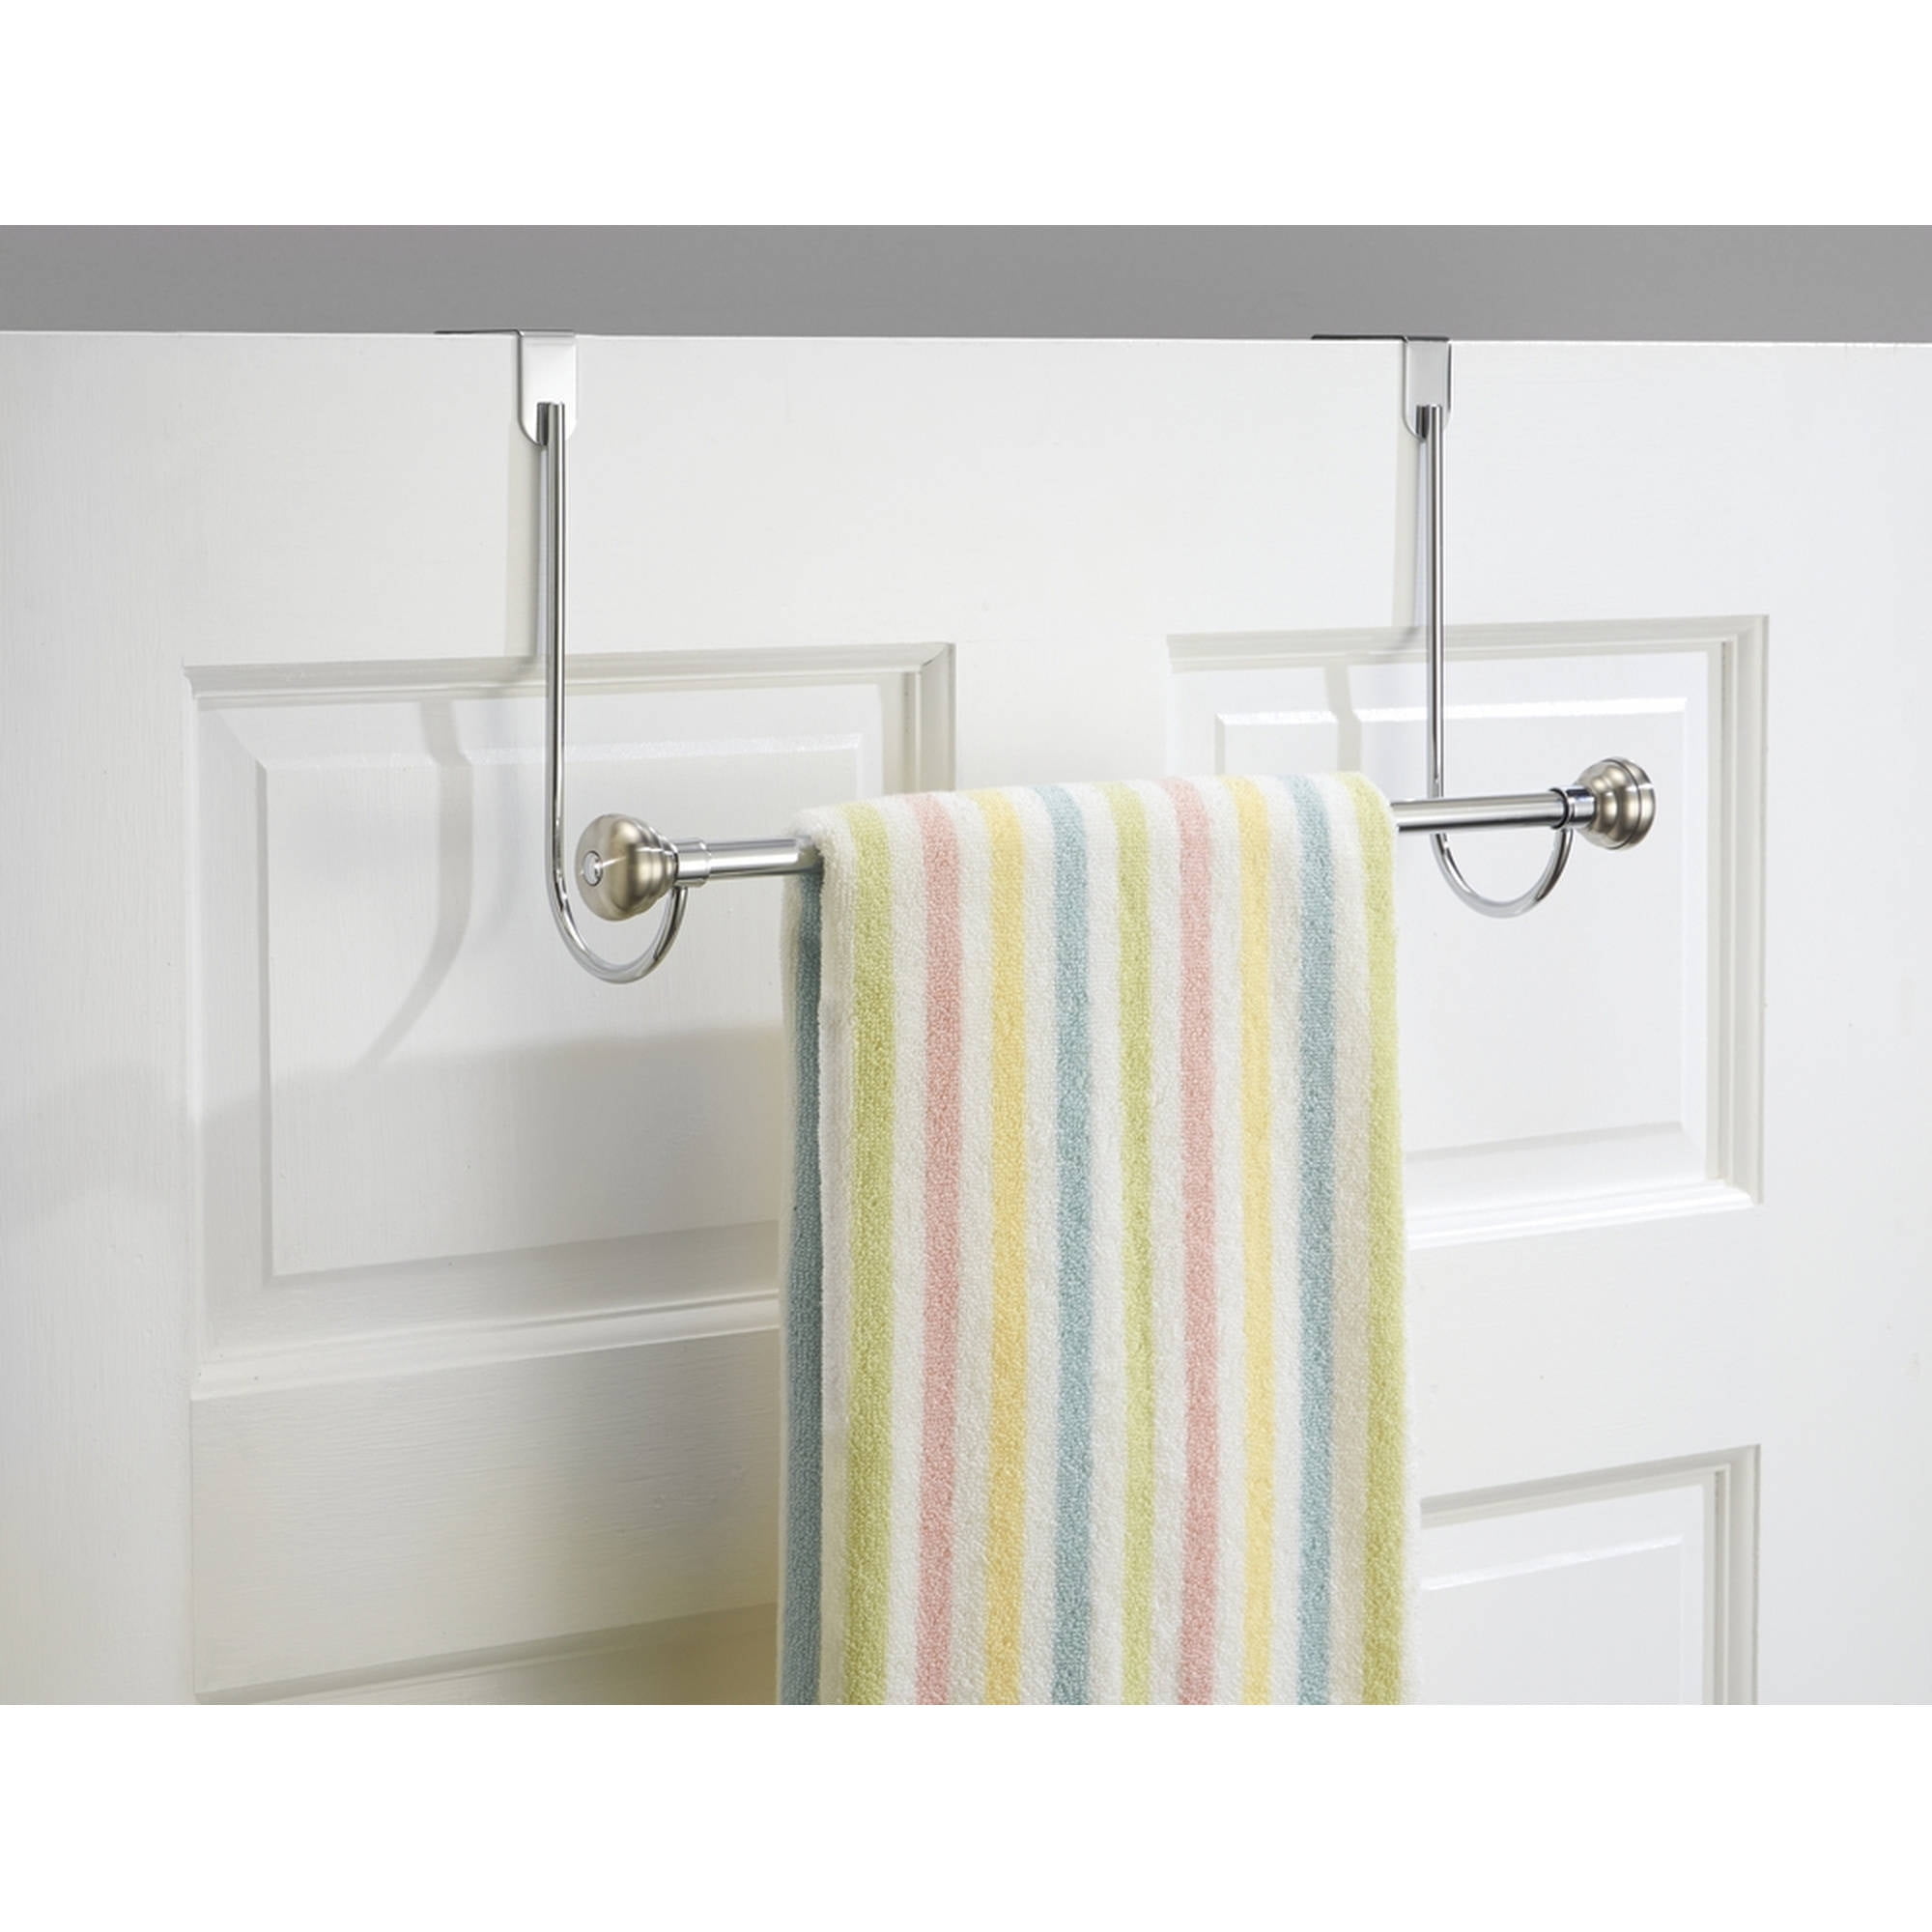 InterDesign York Over Shower Door Towel Rack Bar for Bathroom, Chrome/Stainless